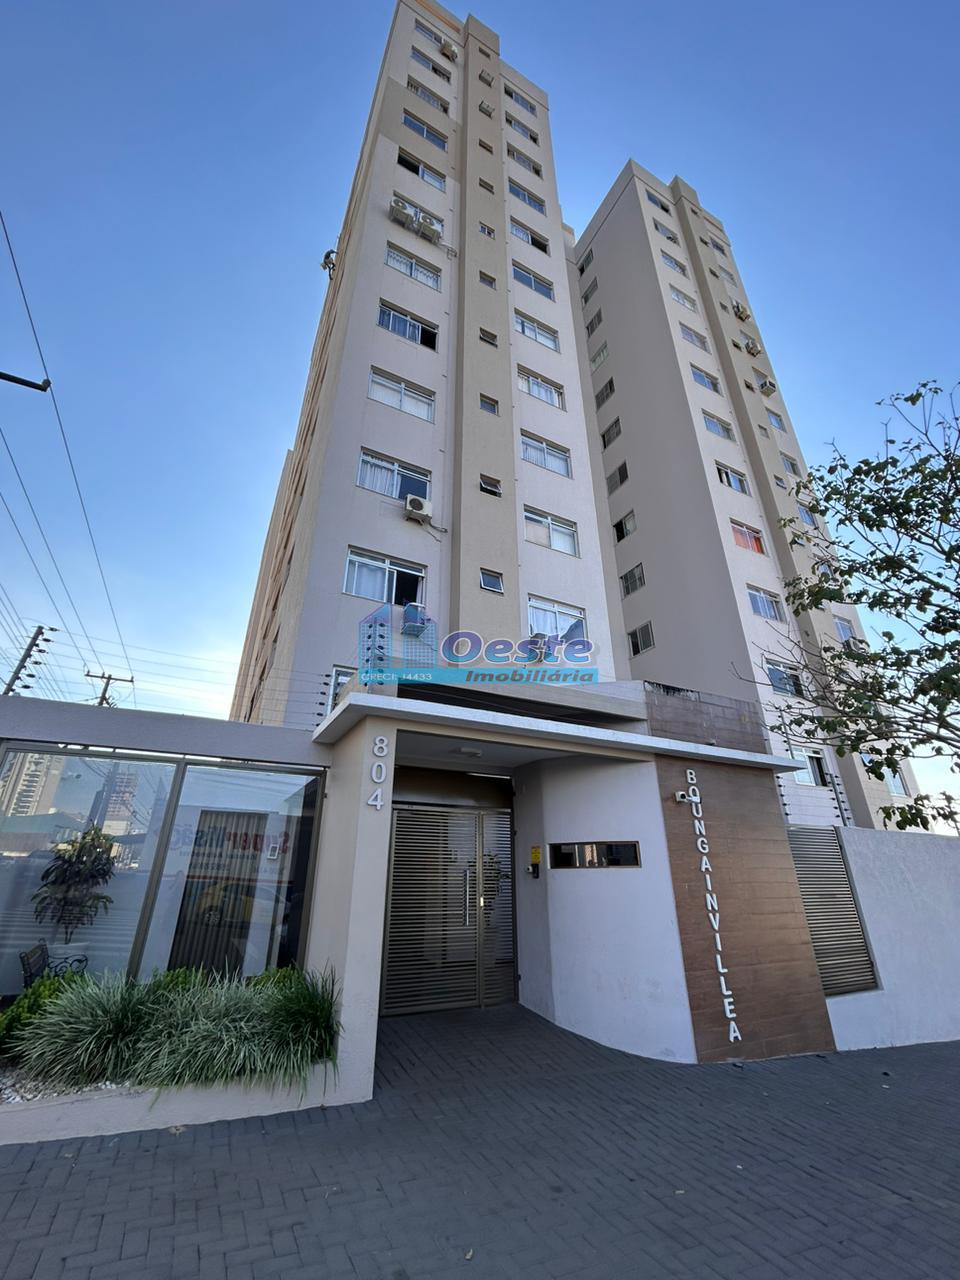 Apartamento com 2 dormitórios à venda,104.00 m , CENTRO , CASC...